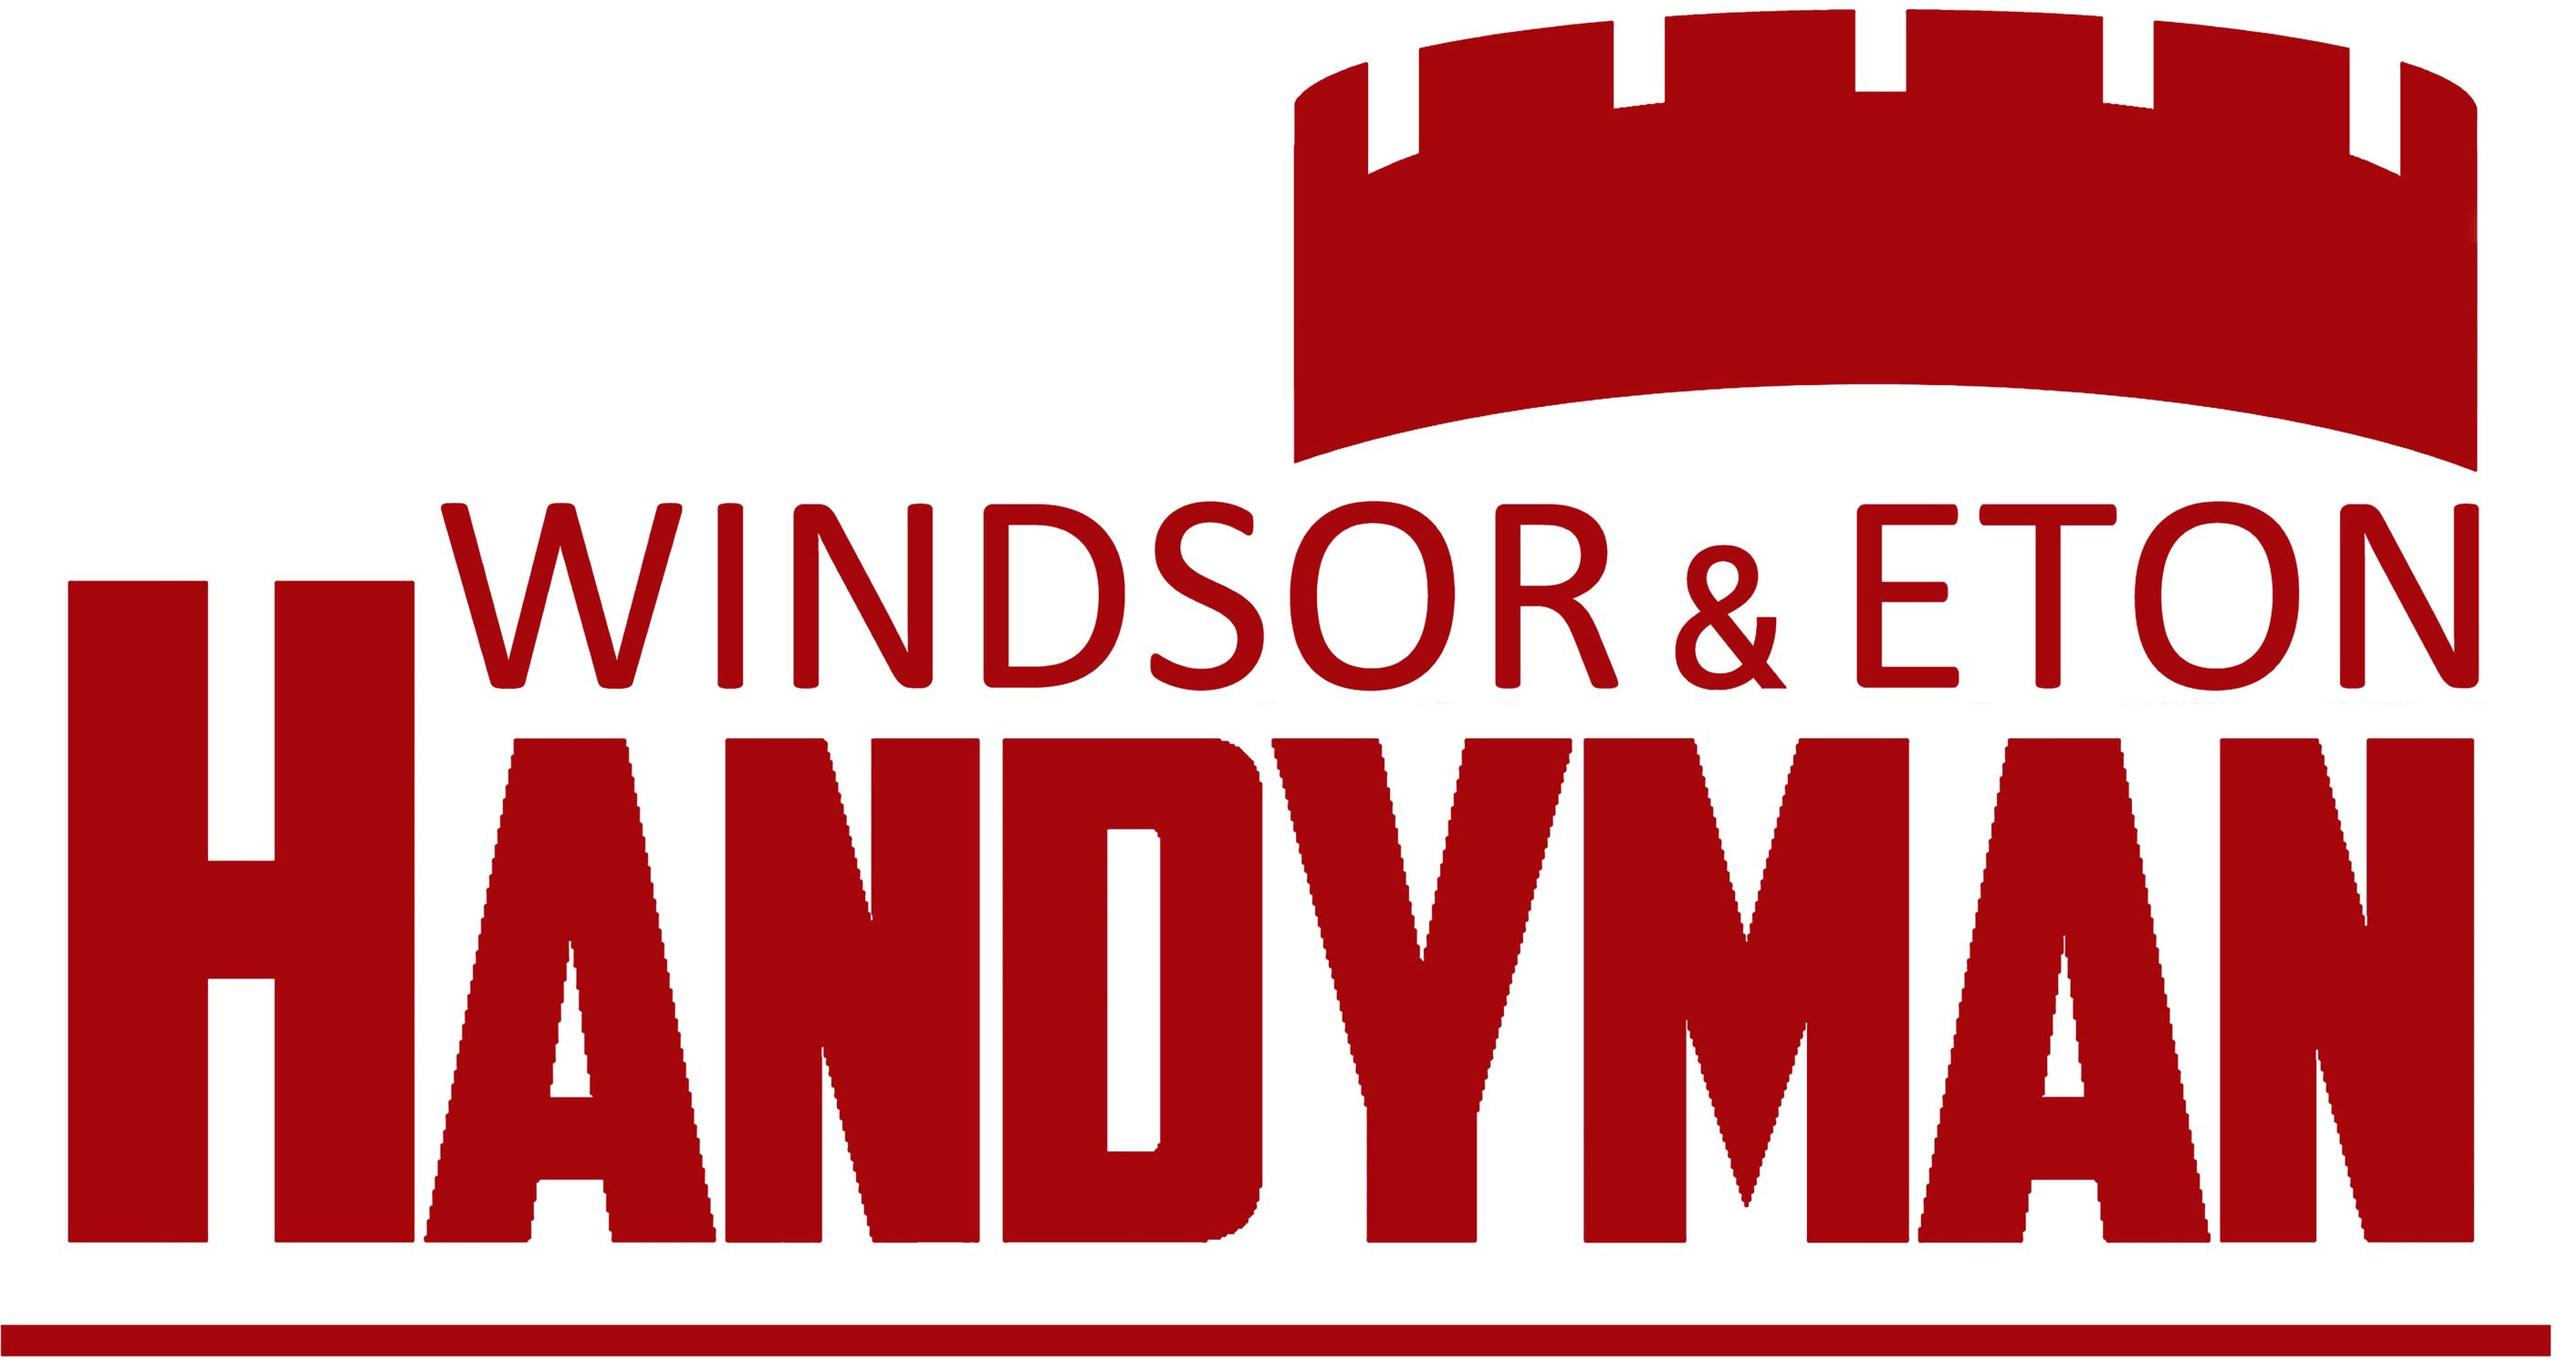 Windsor & Eton Handyman